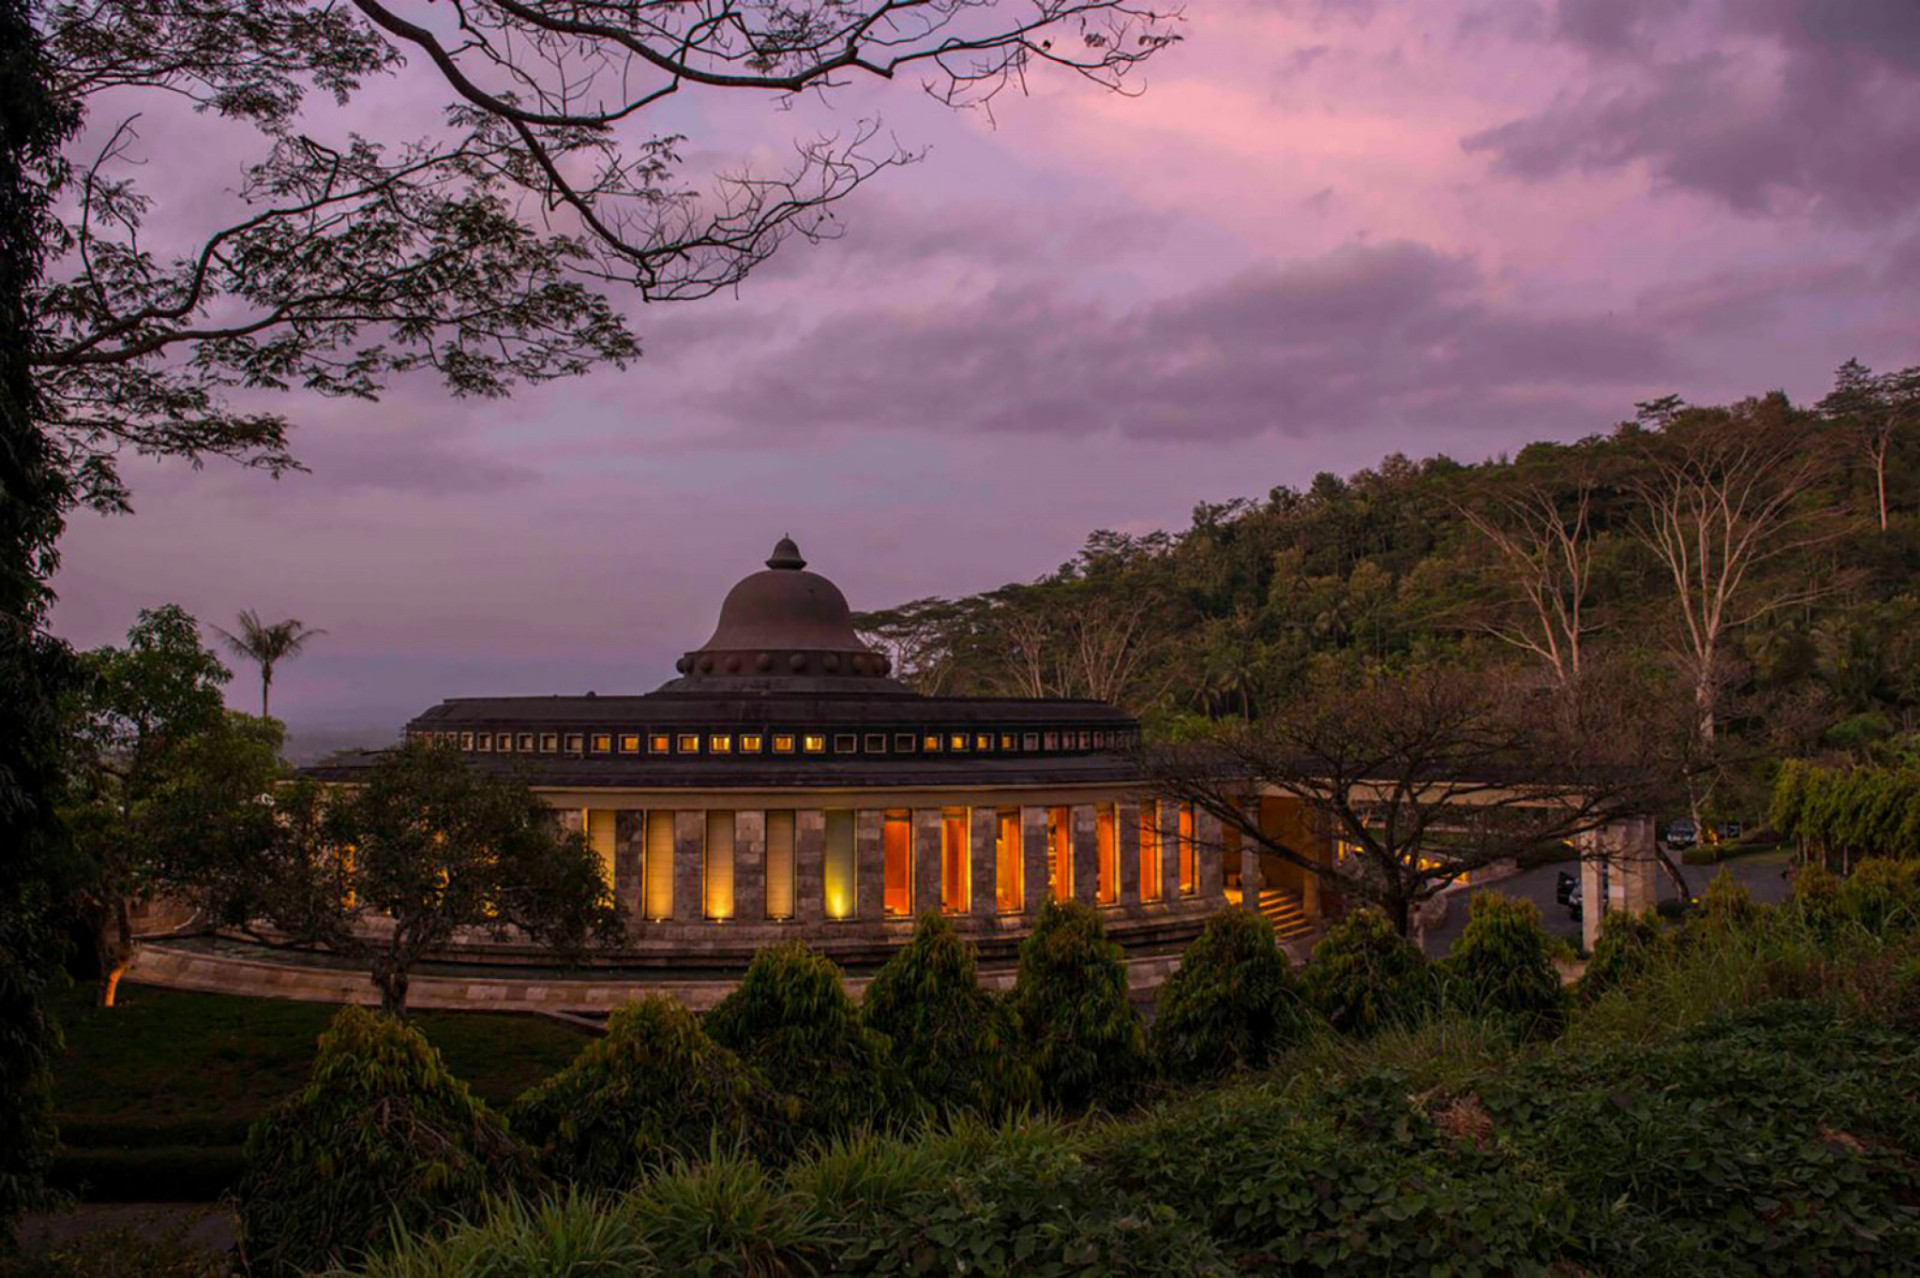 Majiteľka hotela Kau Manor, Mary Jordan o rezorte povedala: "Veľmi pokojné a mierumilovne miesto pri budhistickom chráme Borobudur z 9. storočia, ktorý bol čistou krásou. "